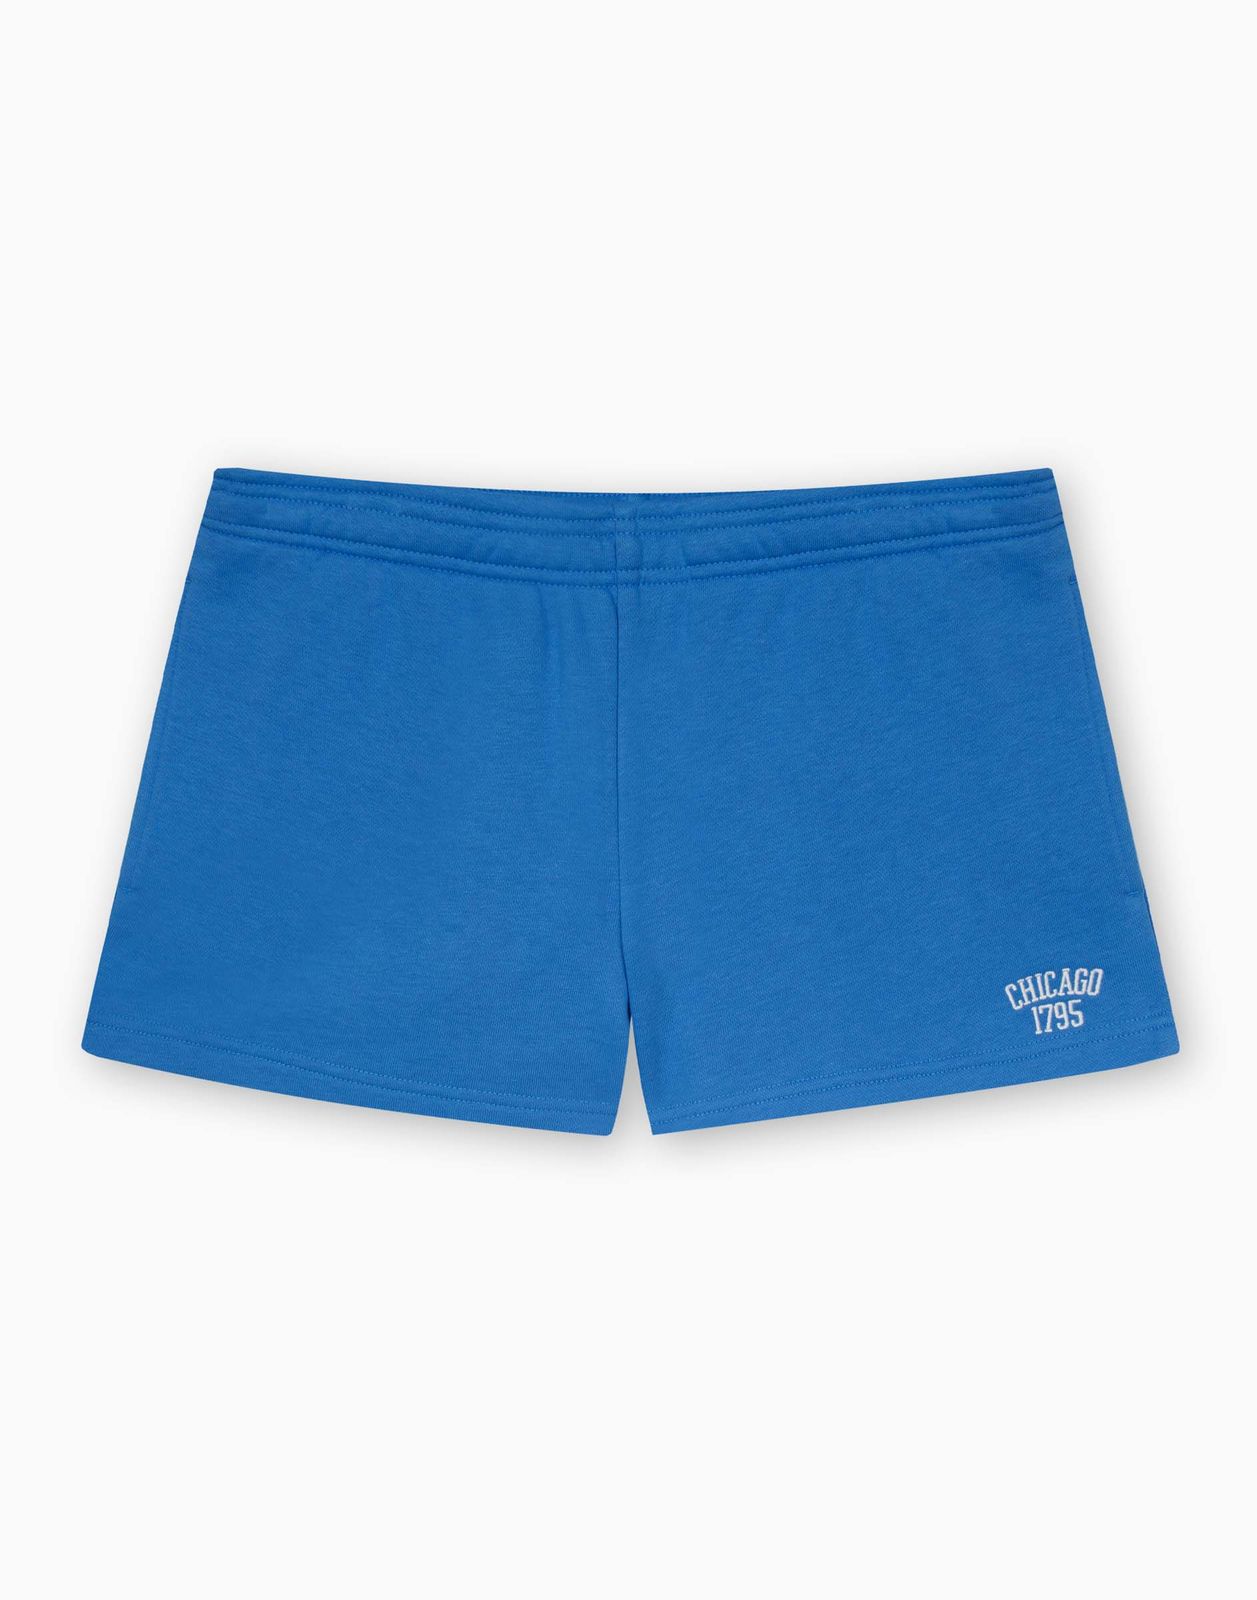 Спортивные шорты женские Gloria Jeans GSH011103 синий XXS/158